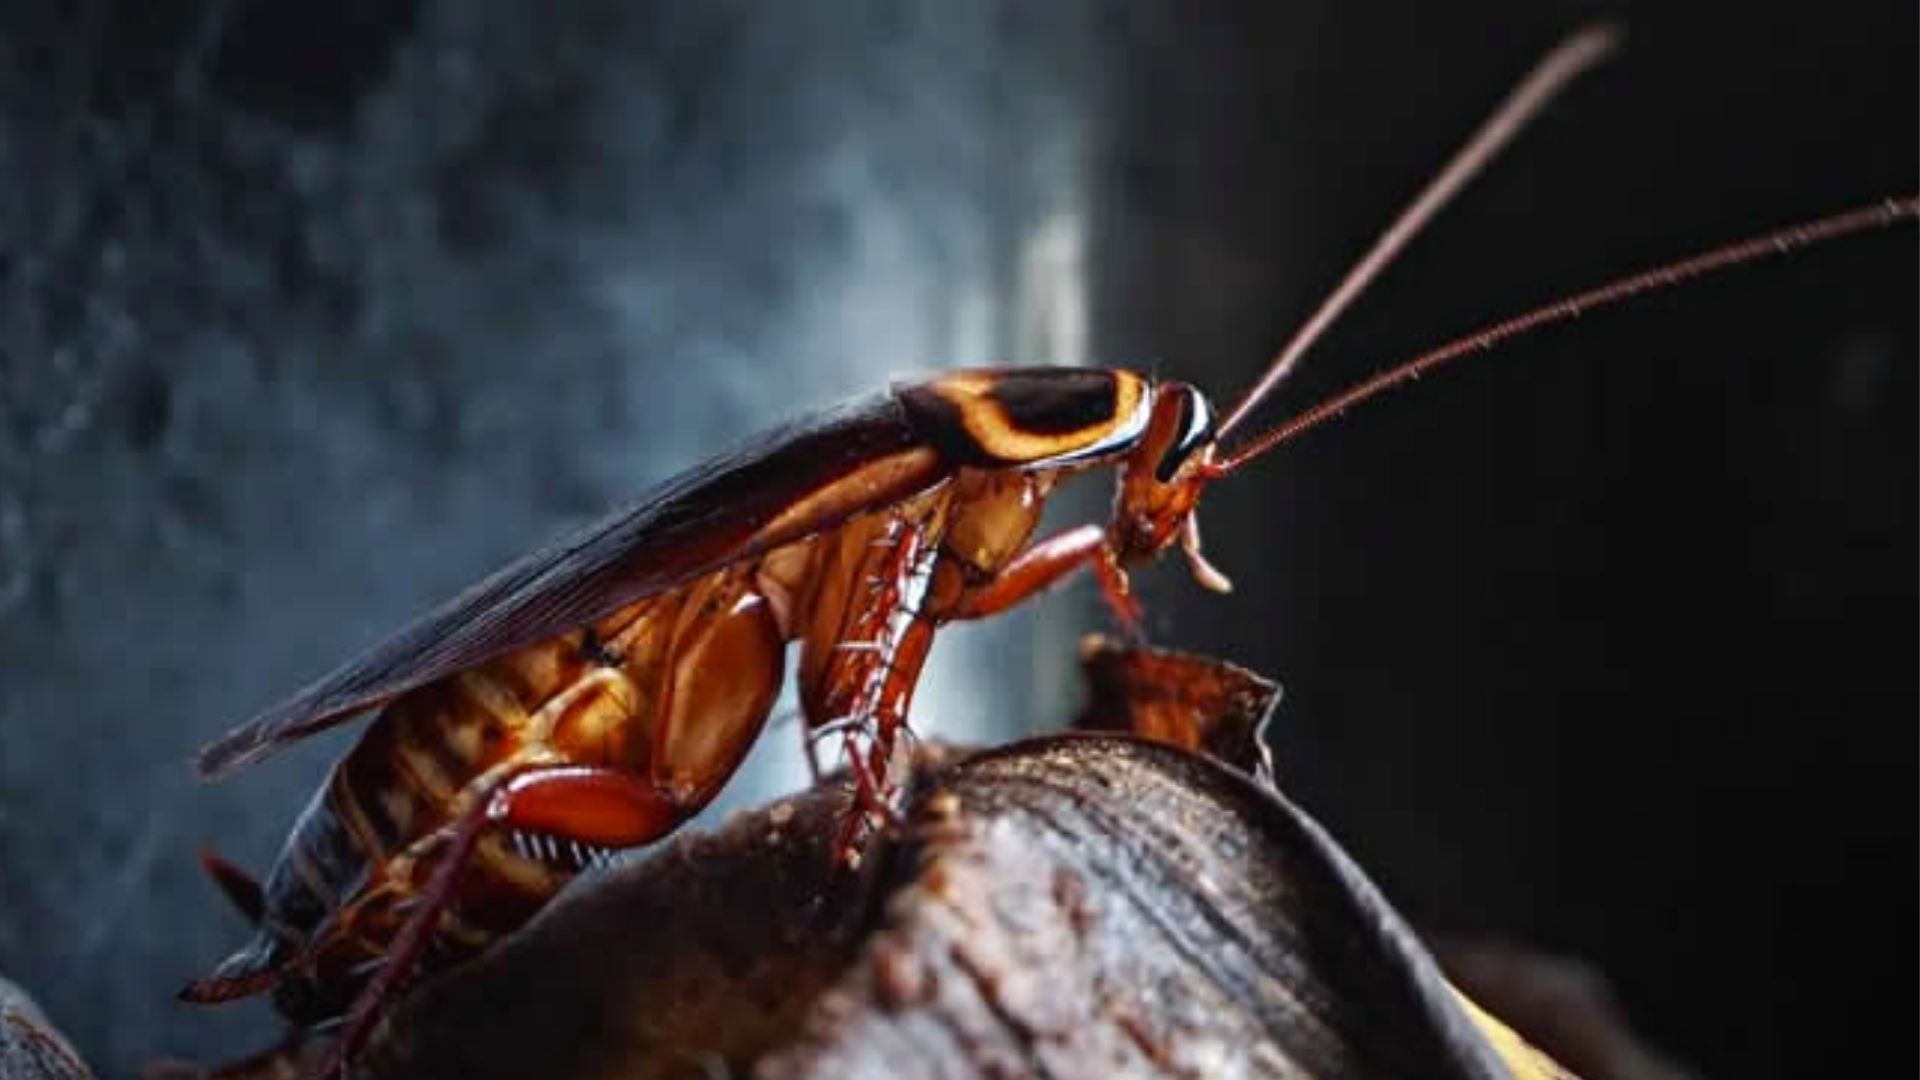 Las cucarachas pueden provocar enfermedades respiratorias o intestinales (Archivo)